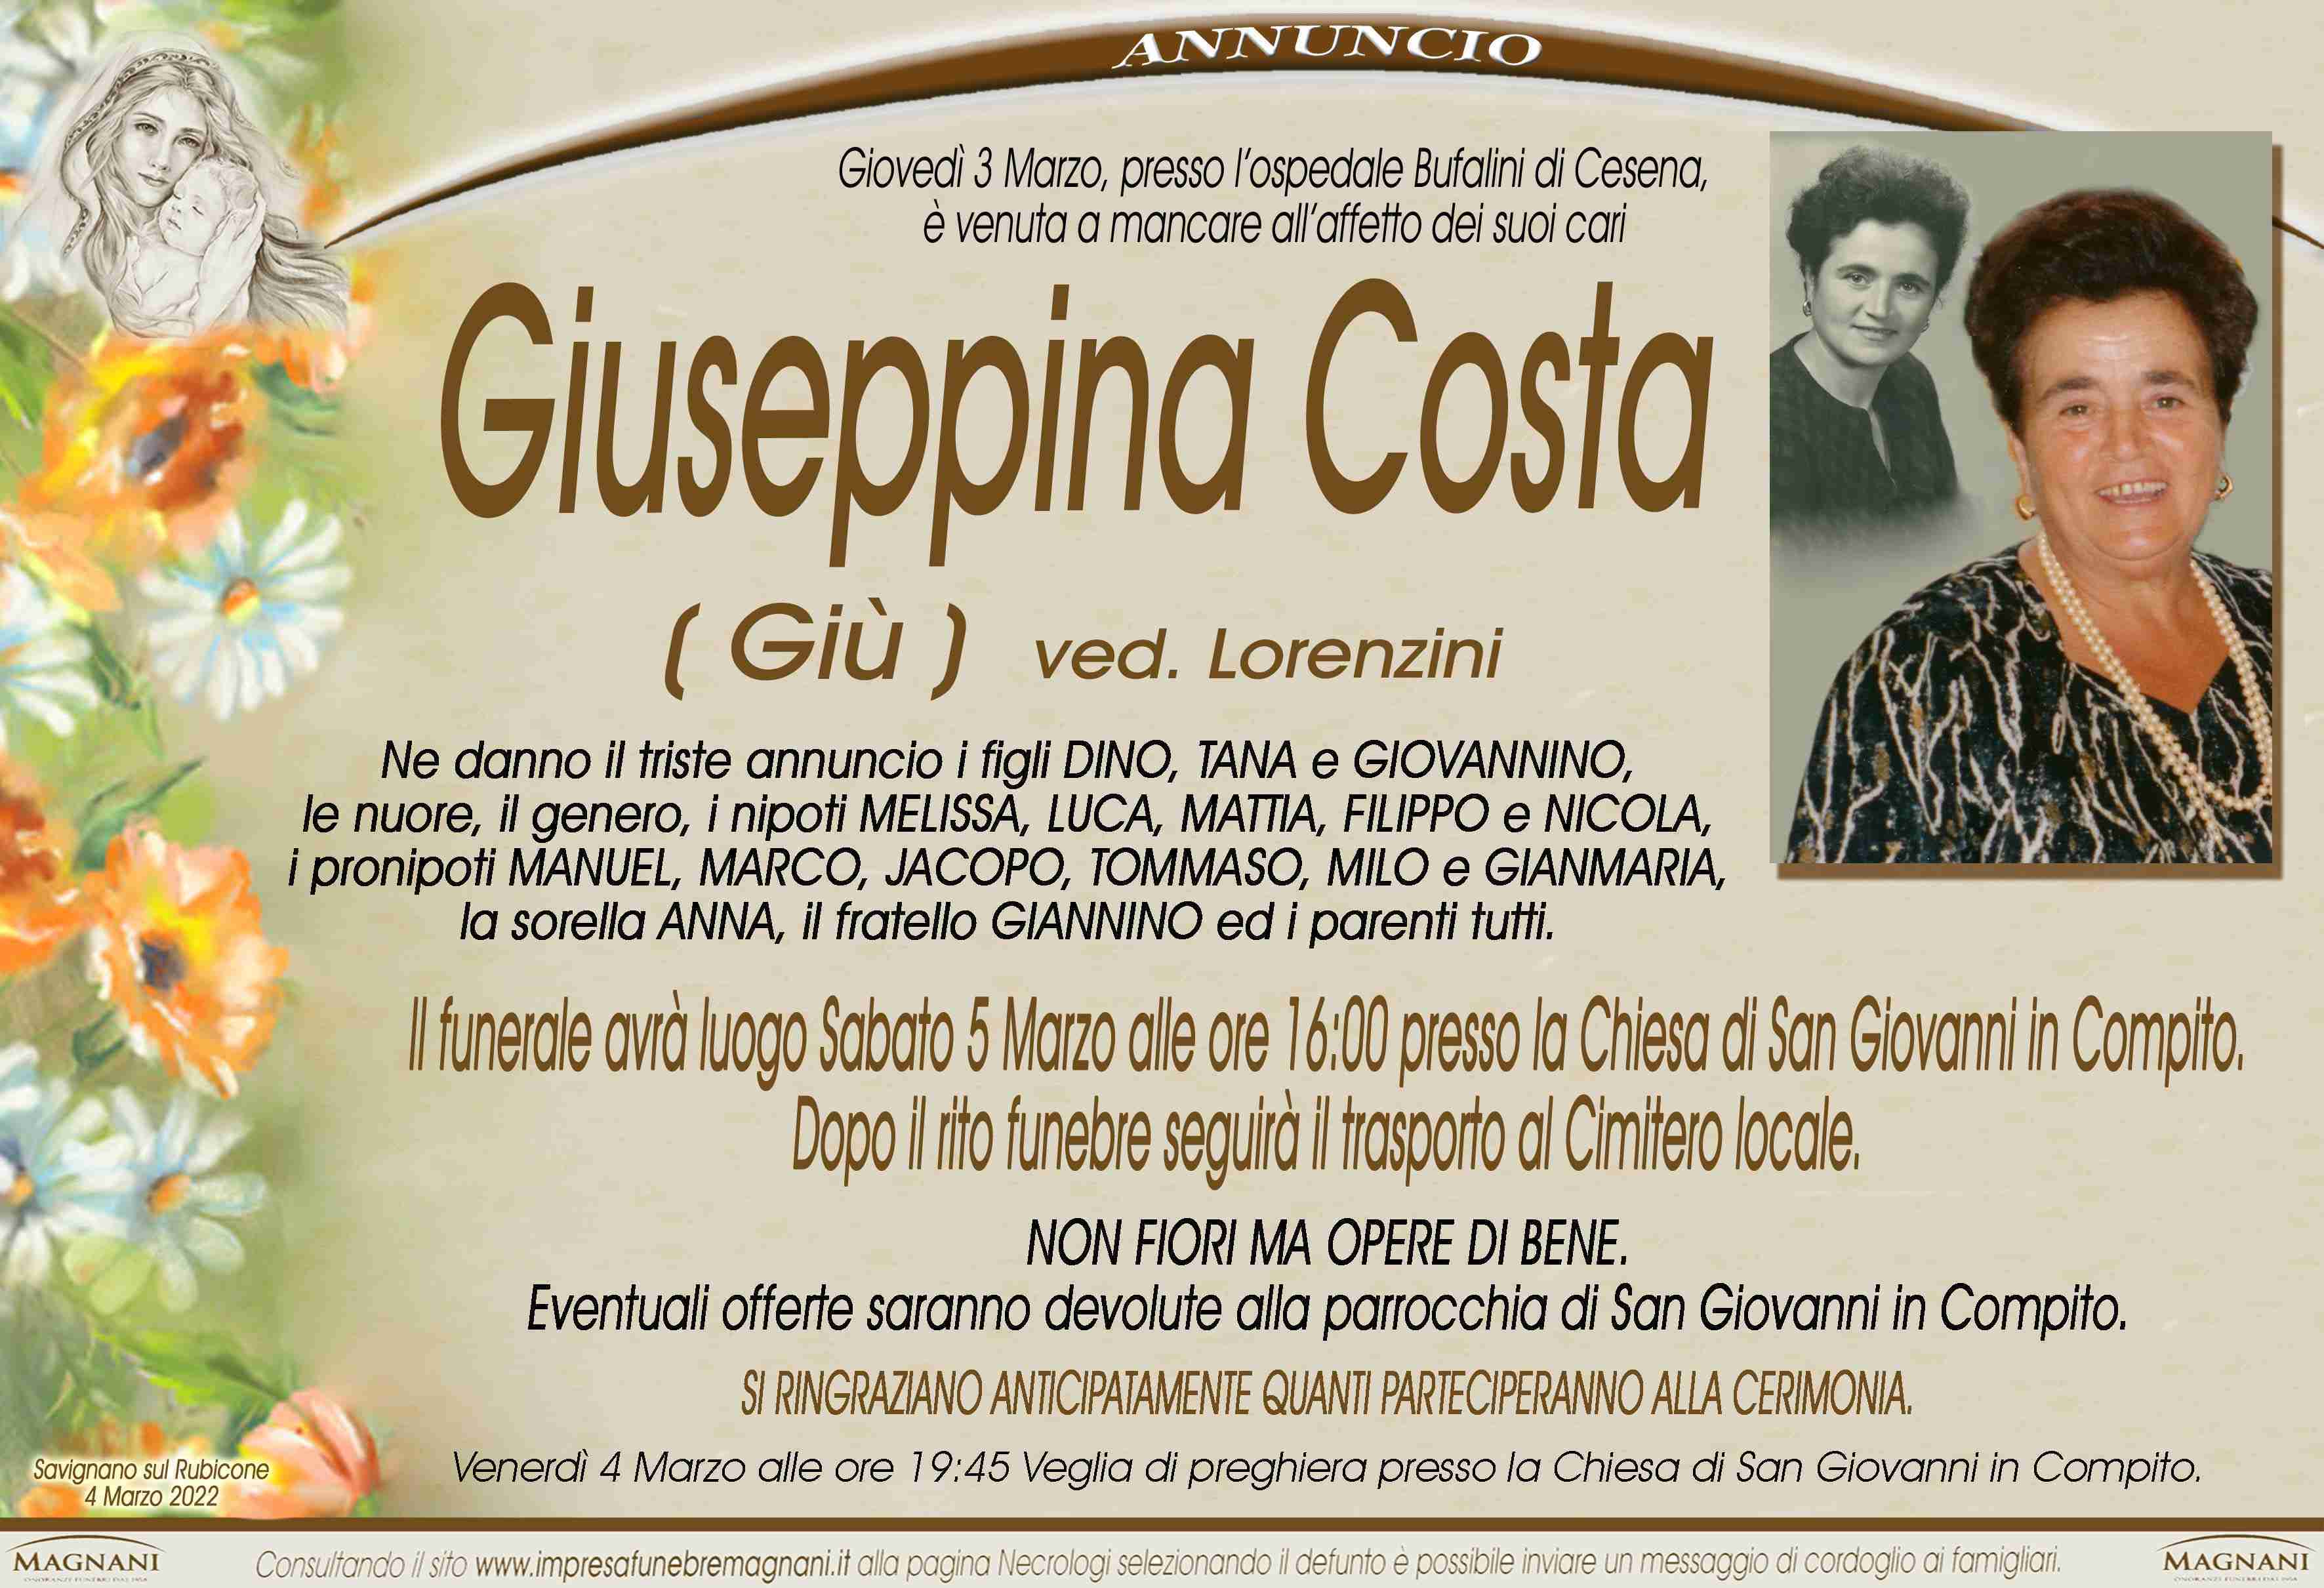 Giuseppina Costa